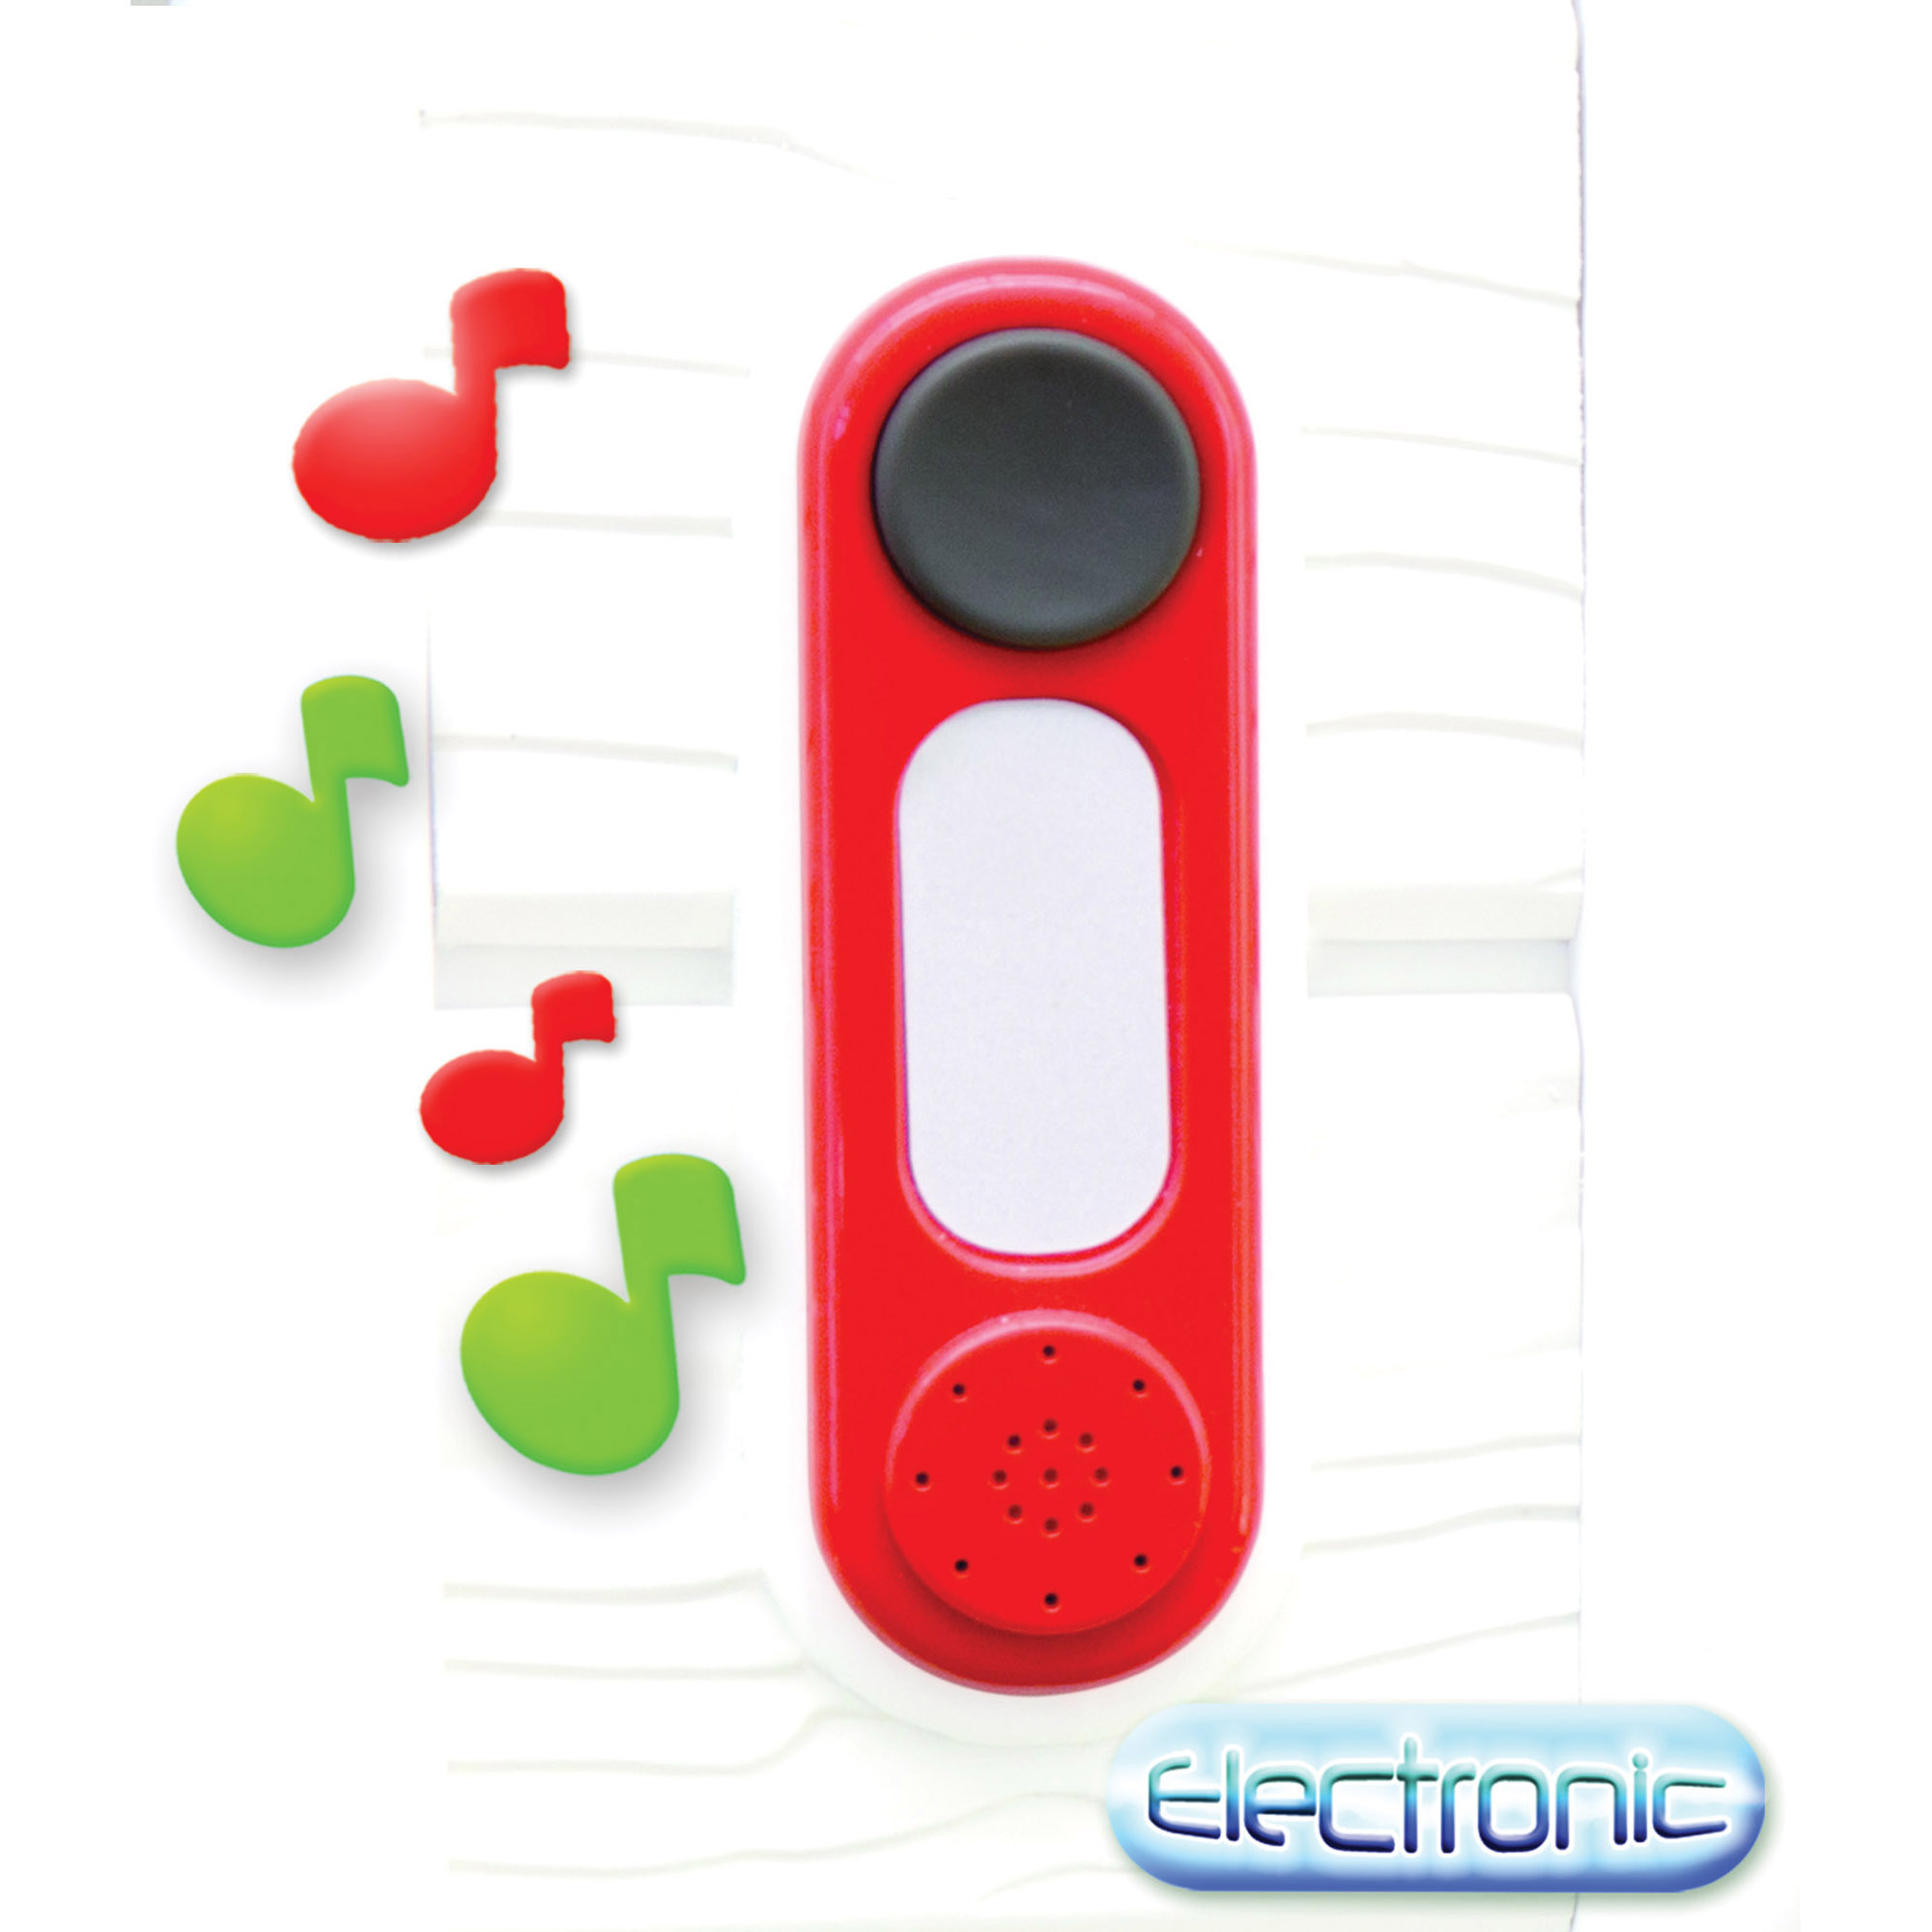 Campanello elettronico, accessorio per casette Smoby - Smoby